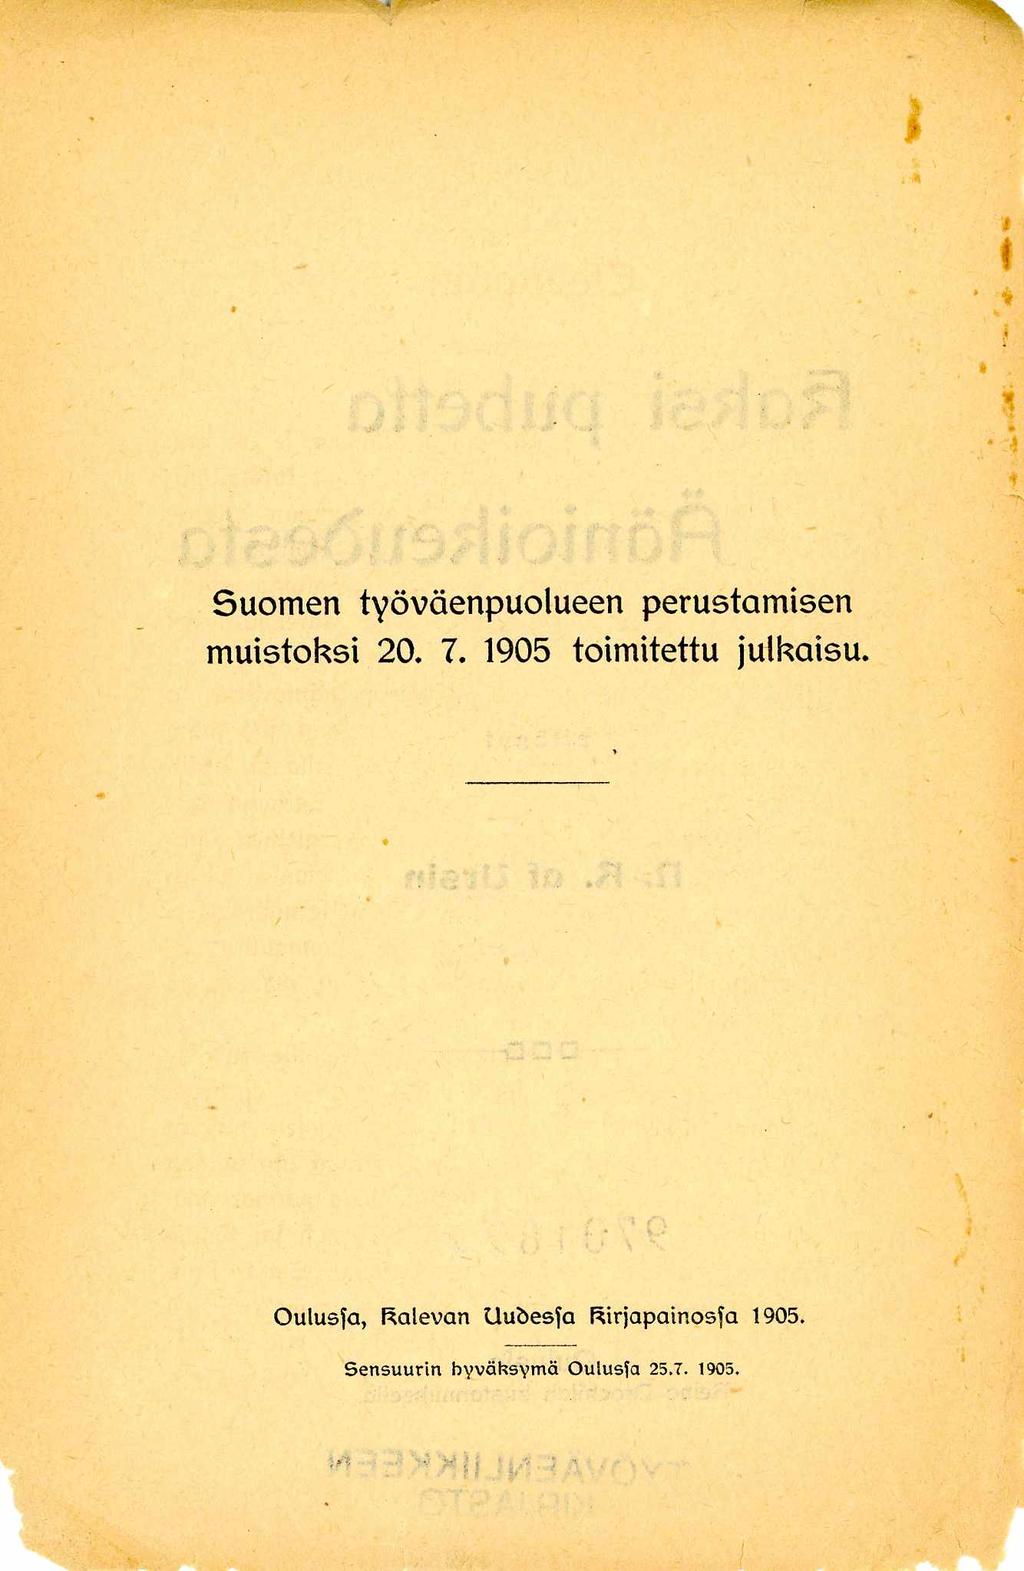 Suomen työväenpuolueen perustam isen m uistoksi 20. 7. 1905 toimitettu julkaisu.